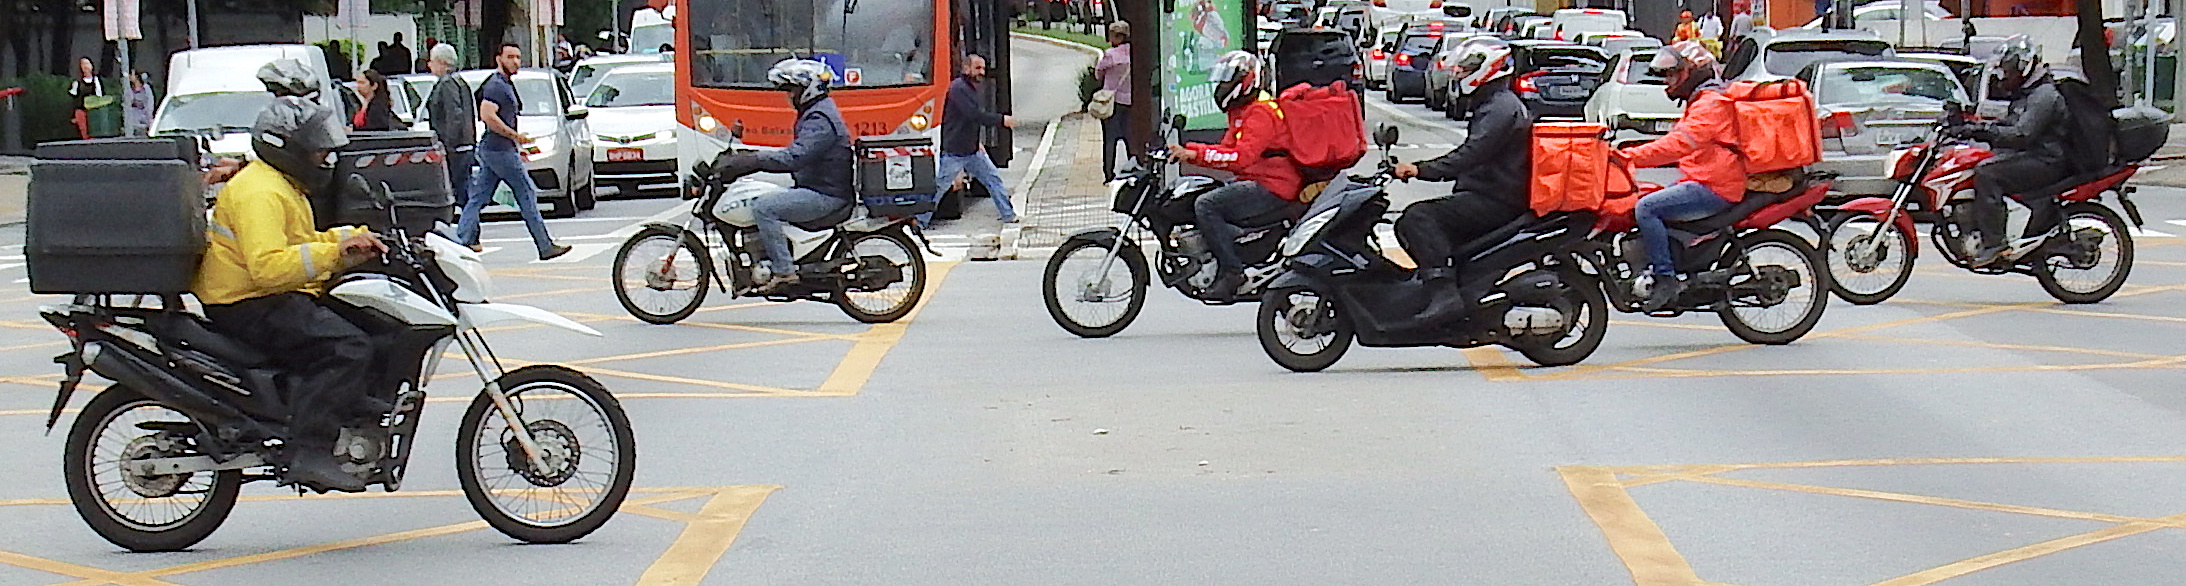 Motociclistas andando em Avenida Grande